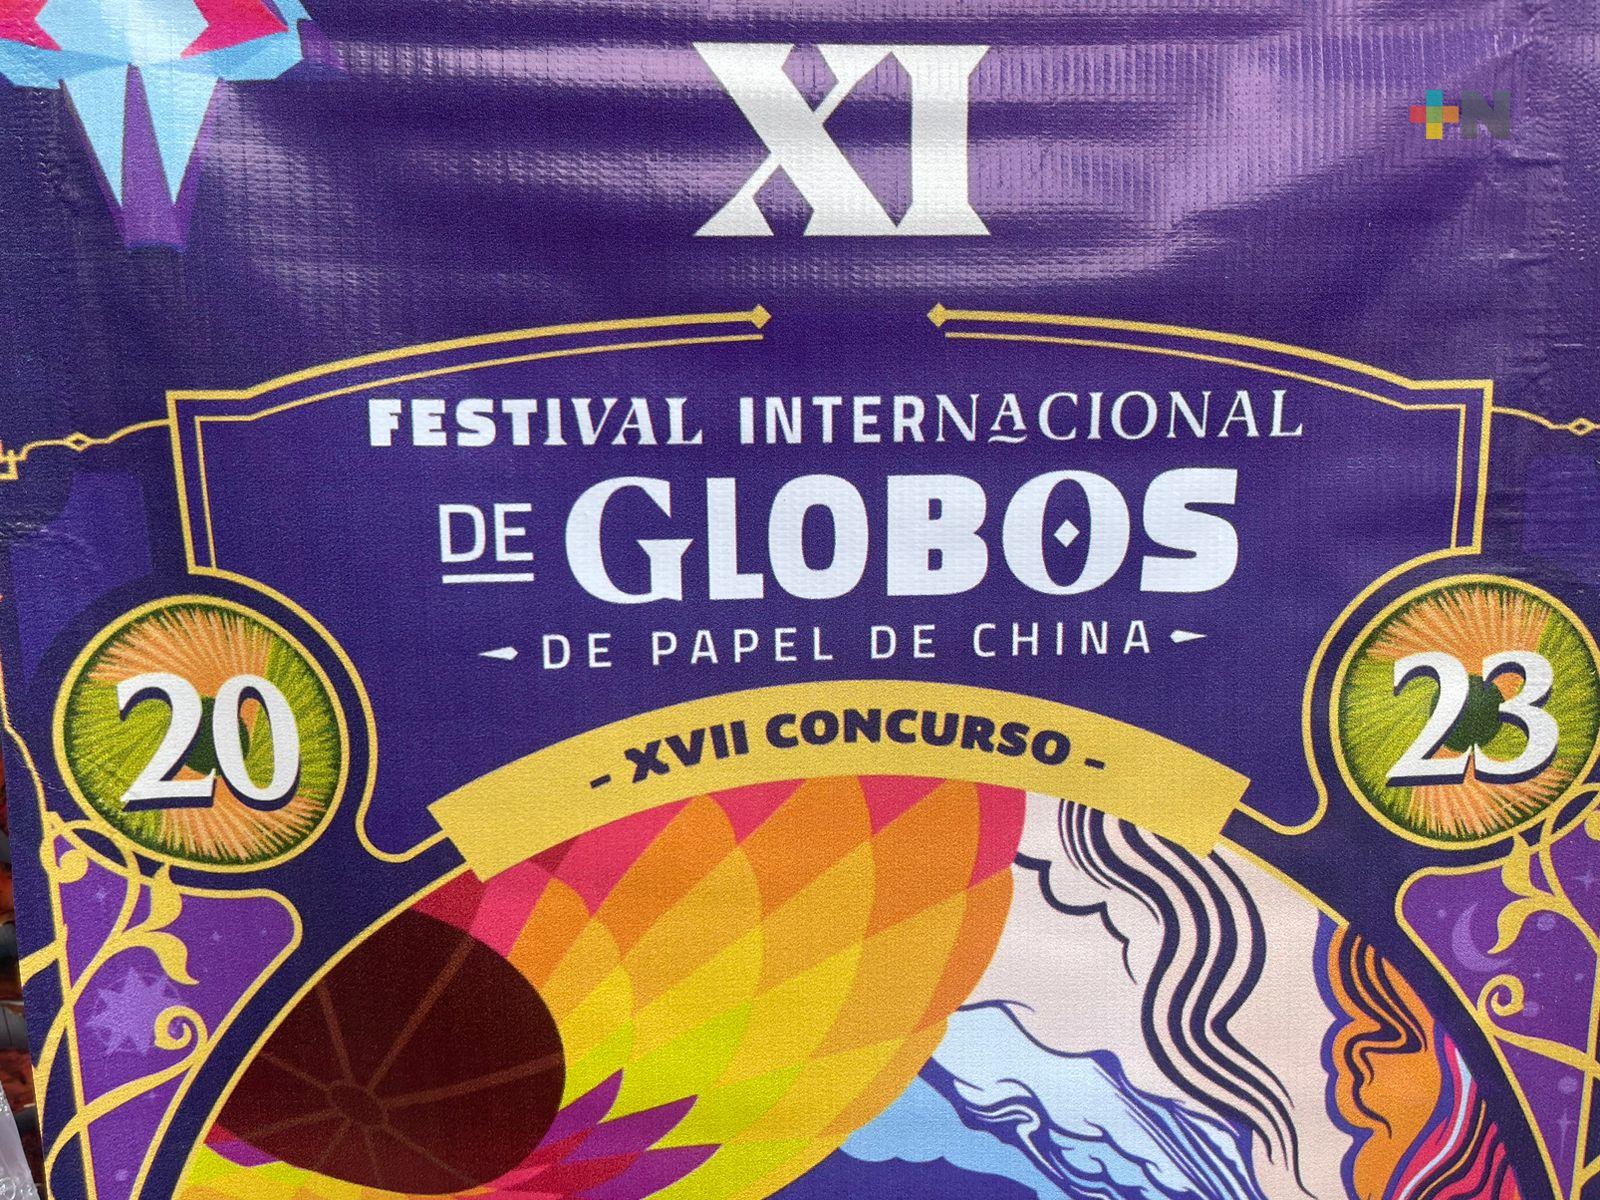 Del 1 al 5 de noviembre, Zozocolco celebrará festival de globos de papel de china